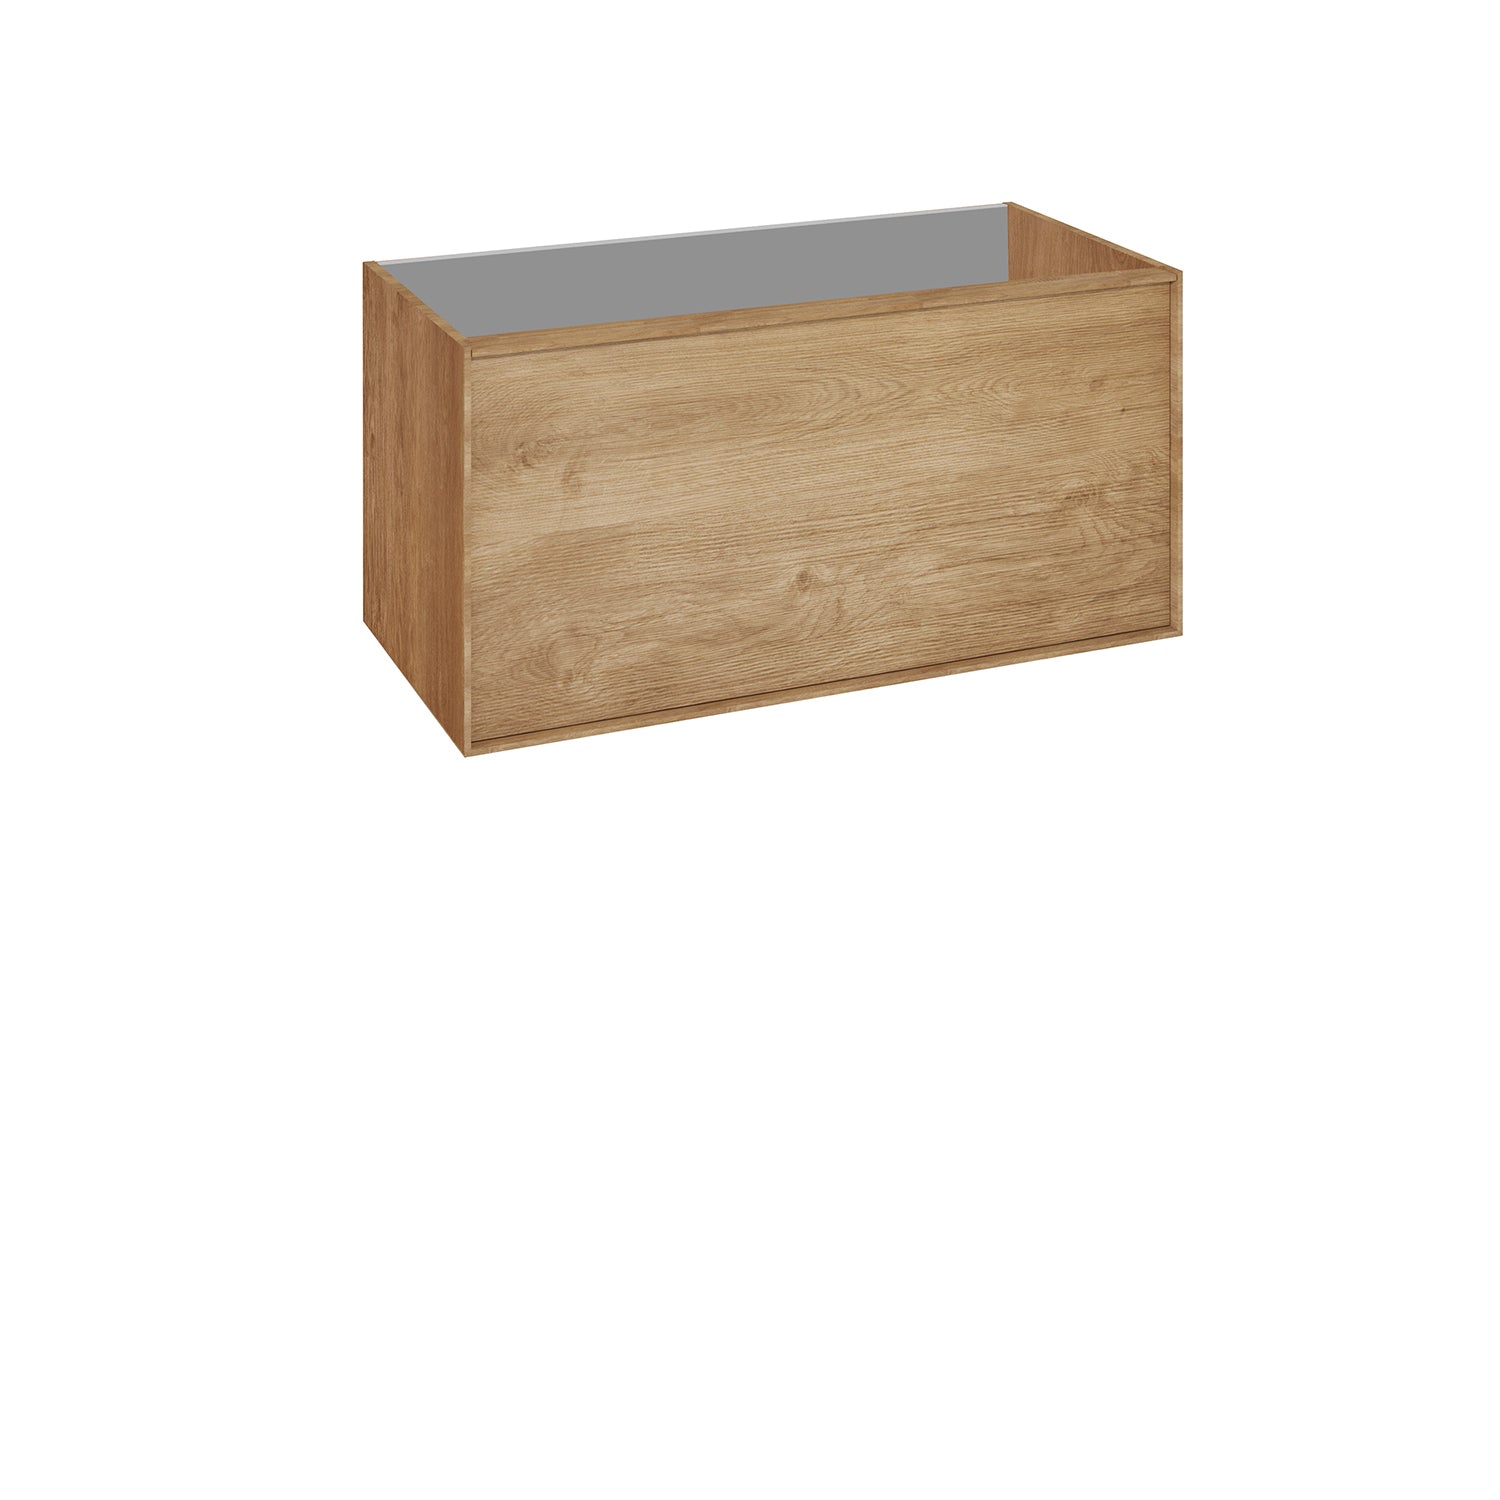 DAX Berlin Single Vanity Cabinet Oak with Onix Basin